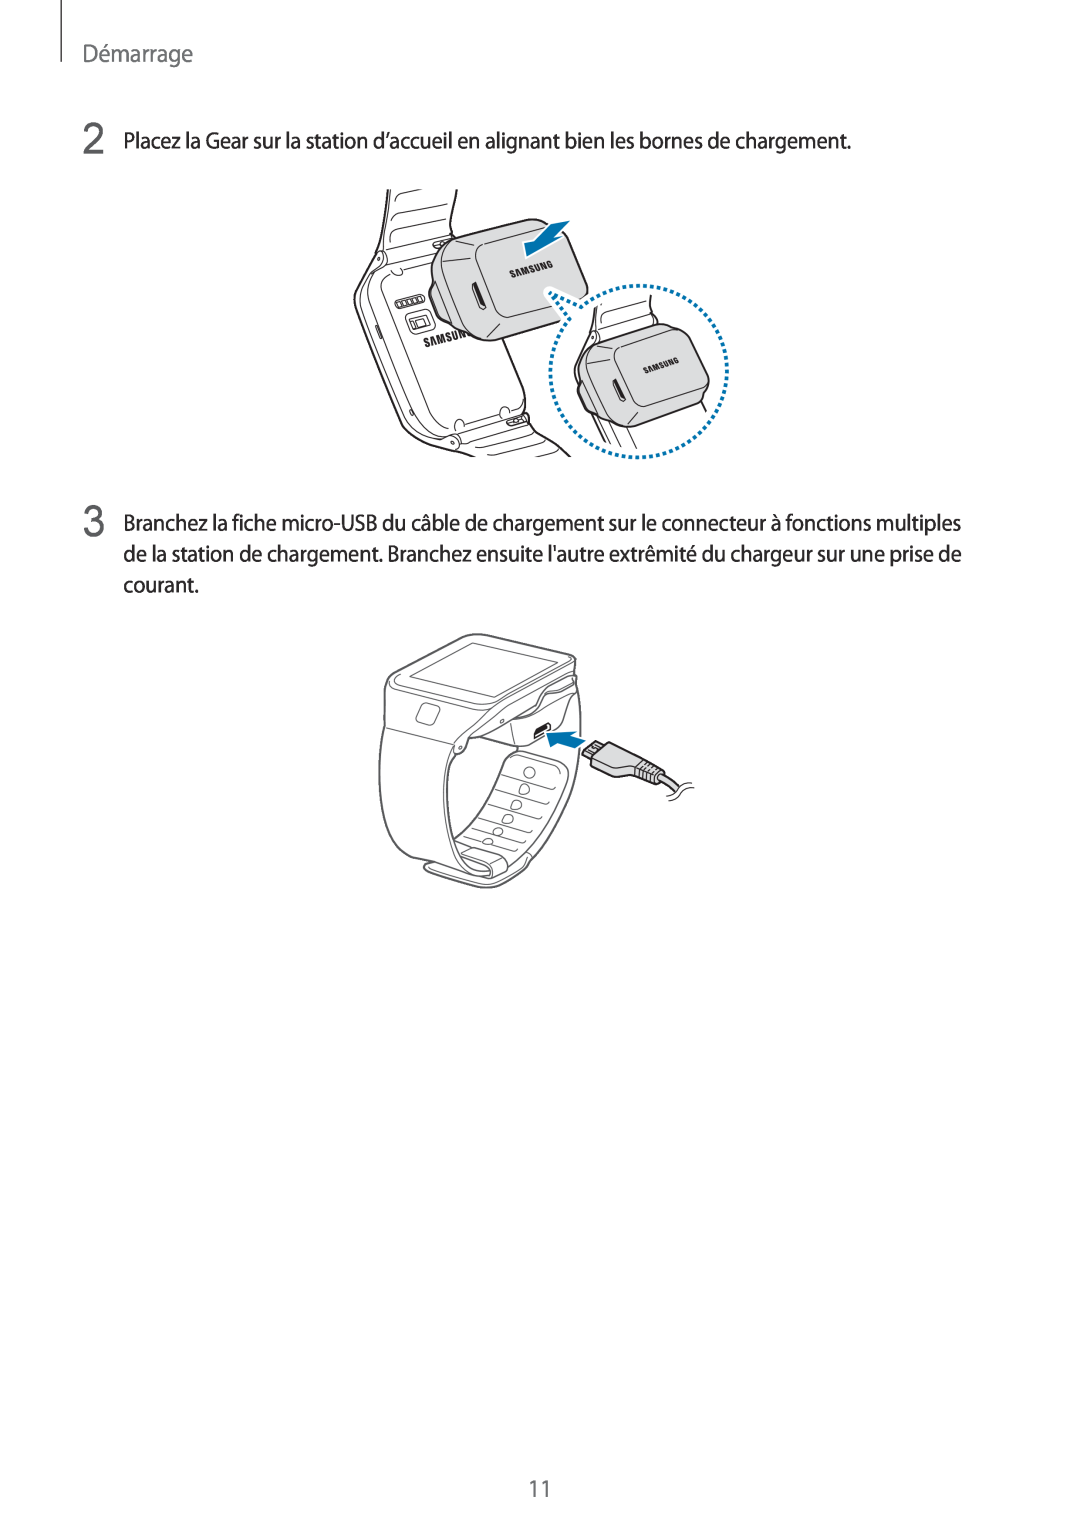 Samsung SM-R3810ZKAXEF manual Démarrage, Placez la Gear sur la station d’accueil en alignant bien les bornes de chargement 